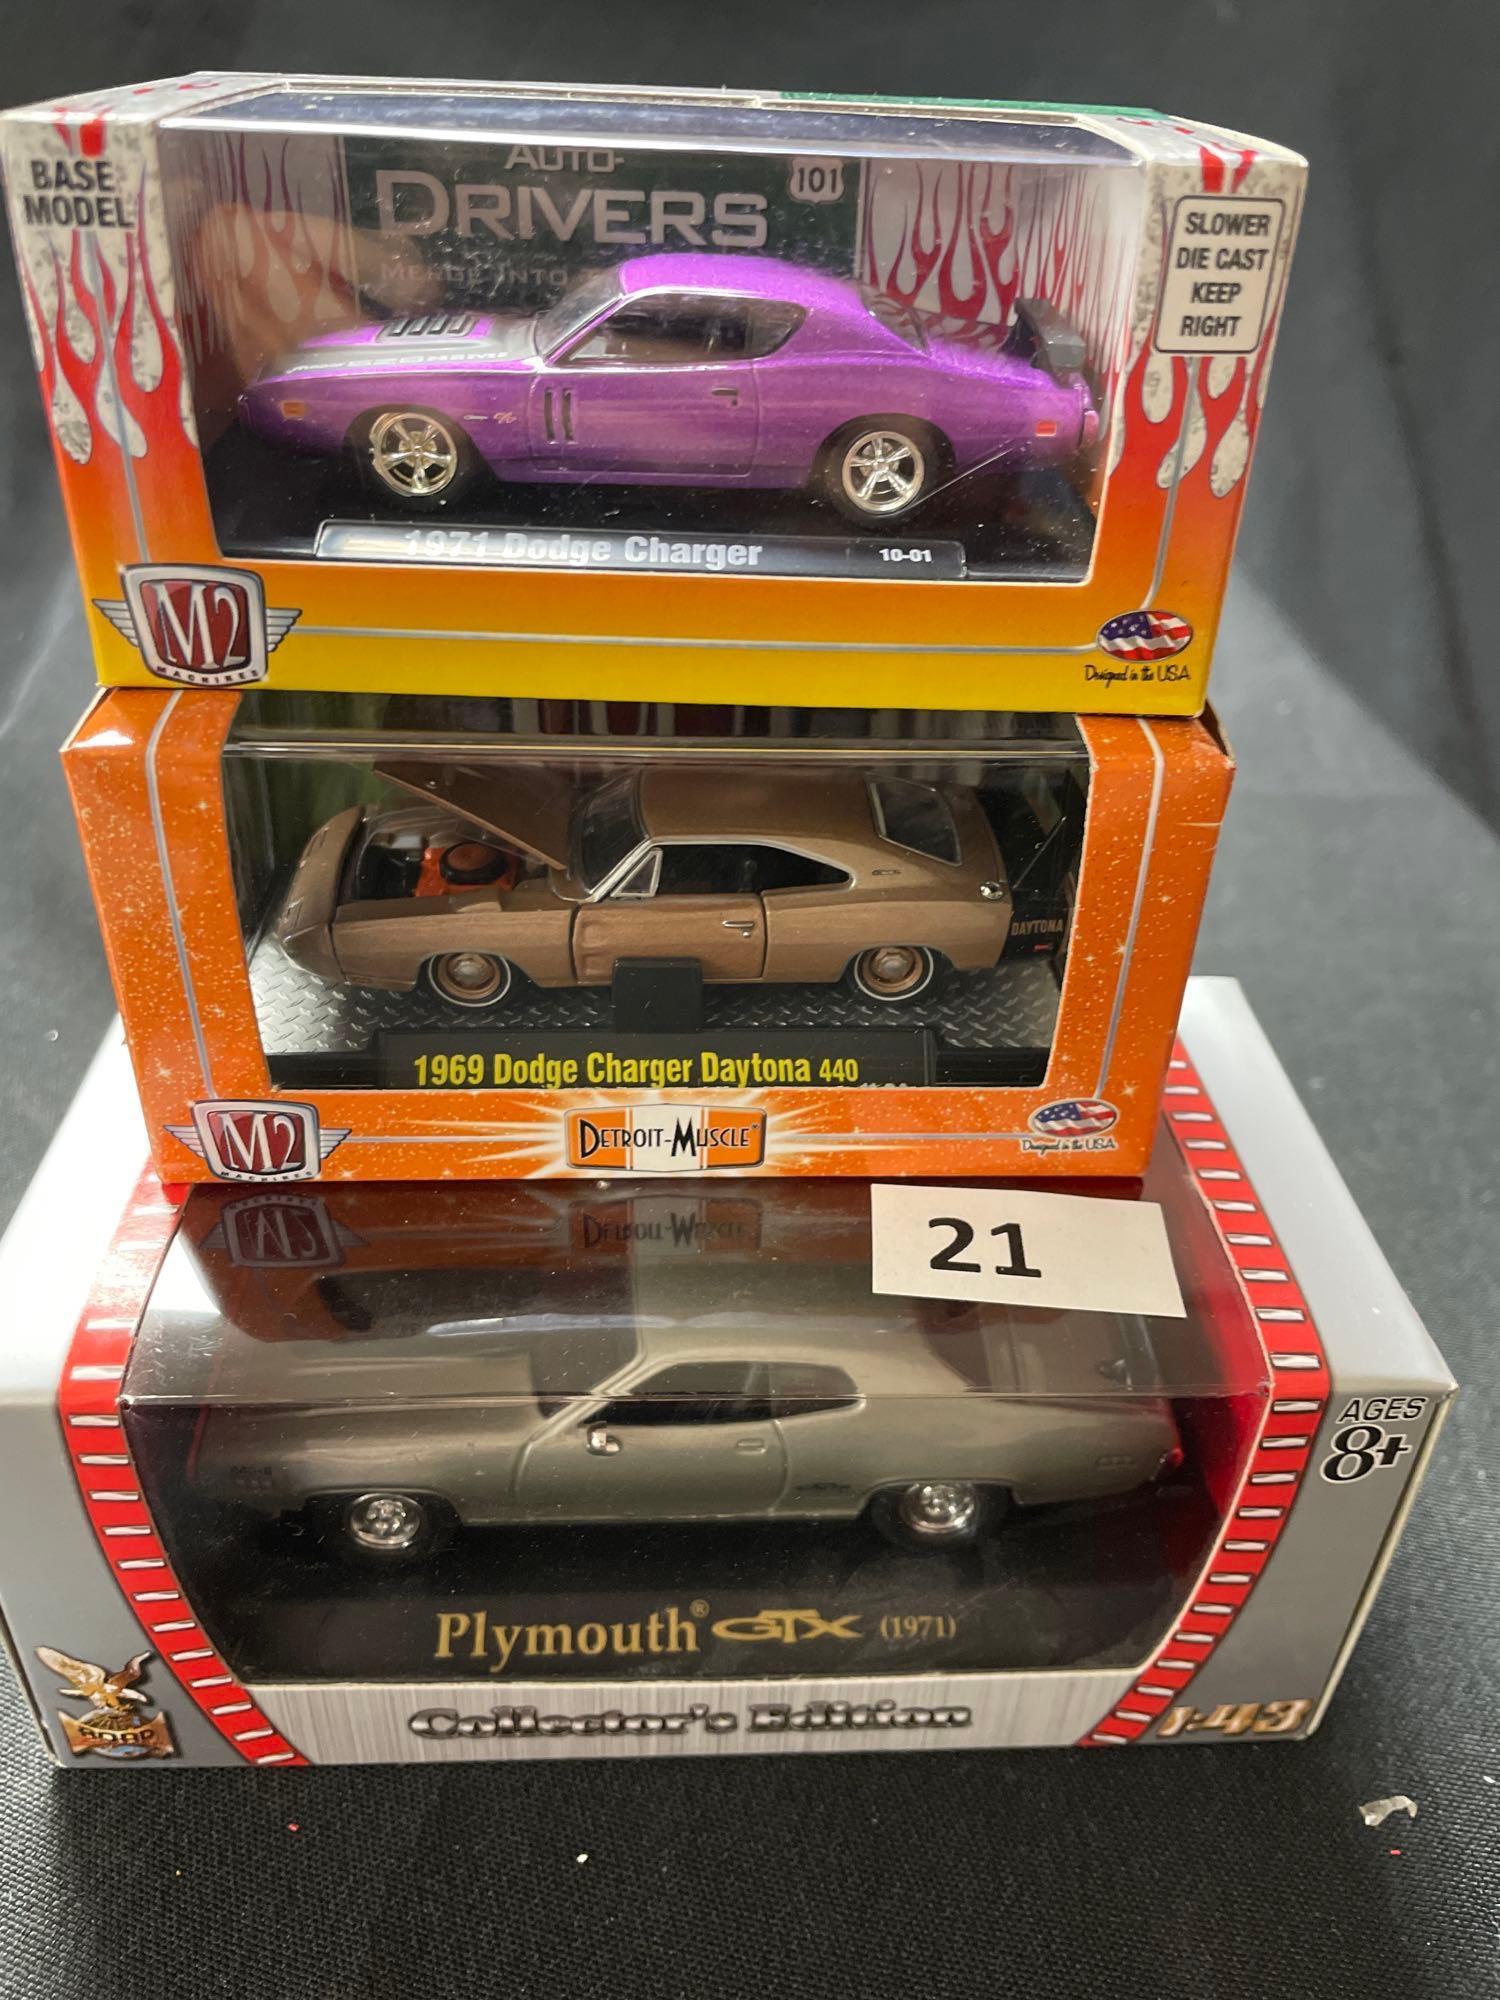 3 Toy Cars, NIB